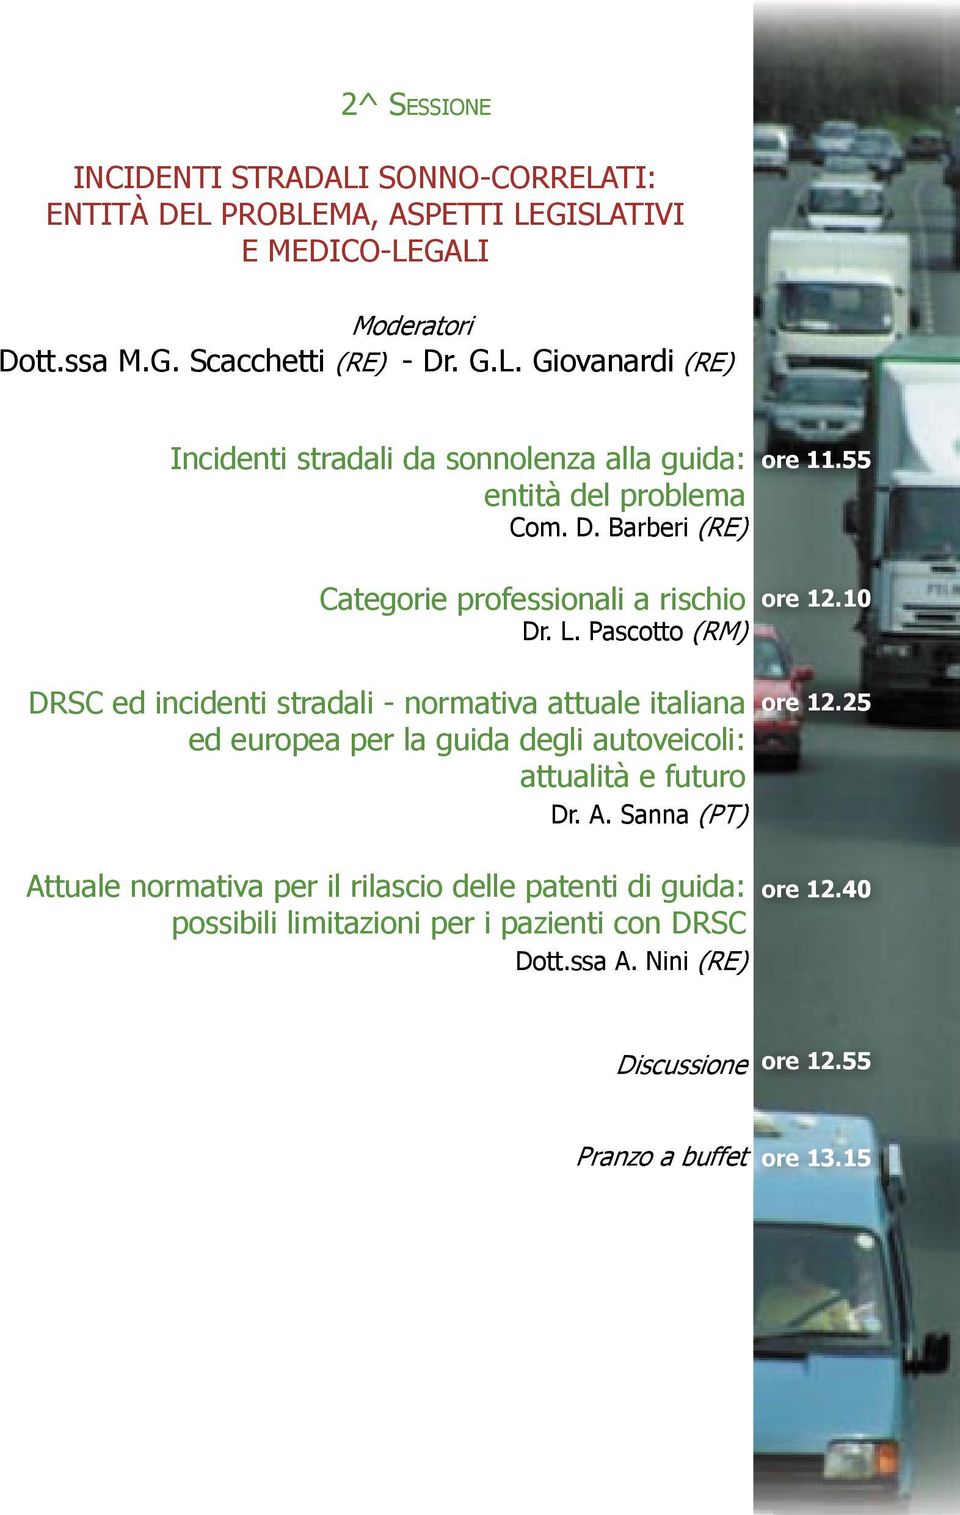 Pascotto (RM) DRSC ed incidenti stradali - normativa attuale italiana ed europea per la guida degli autoveicoli: attualità e futuro Dr. A.